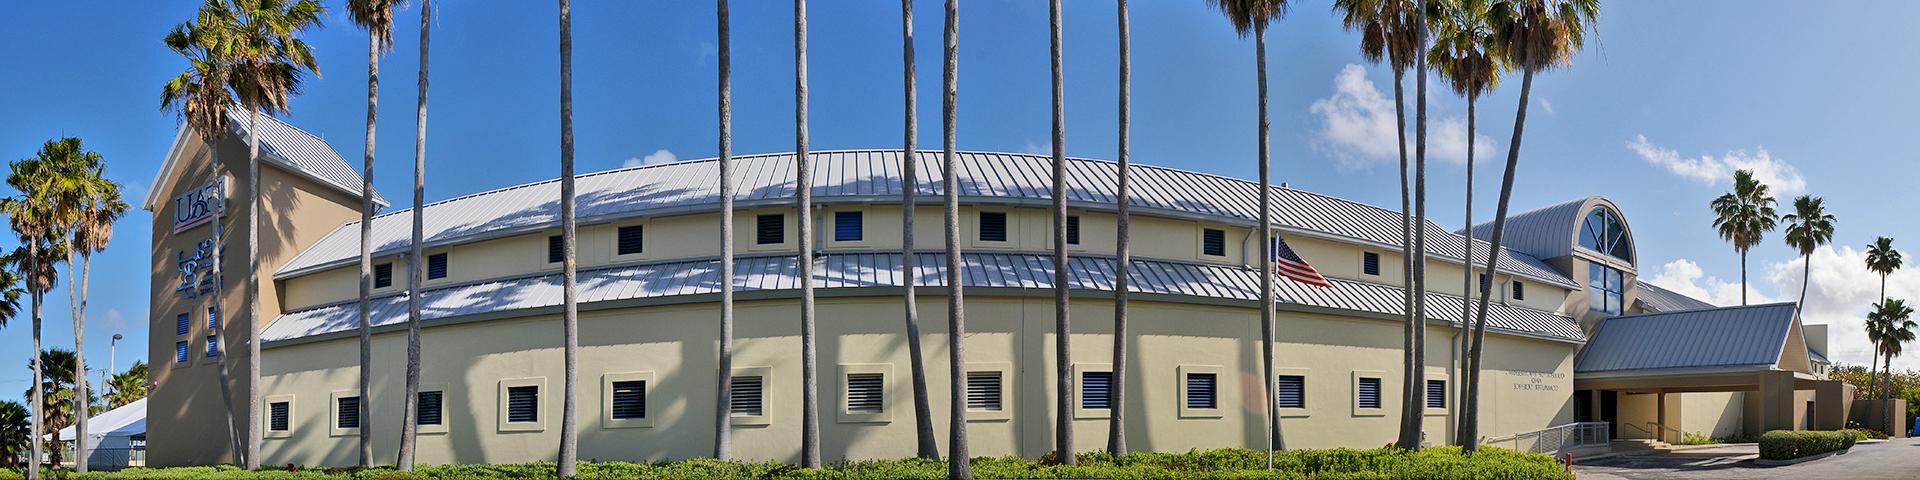 Dania Beach Research Center